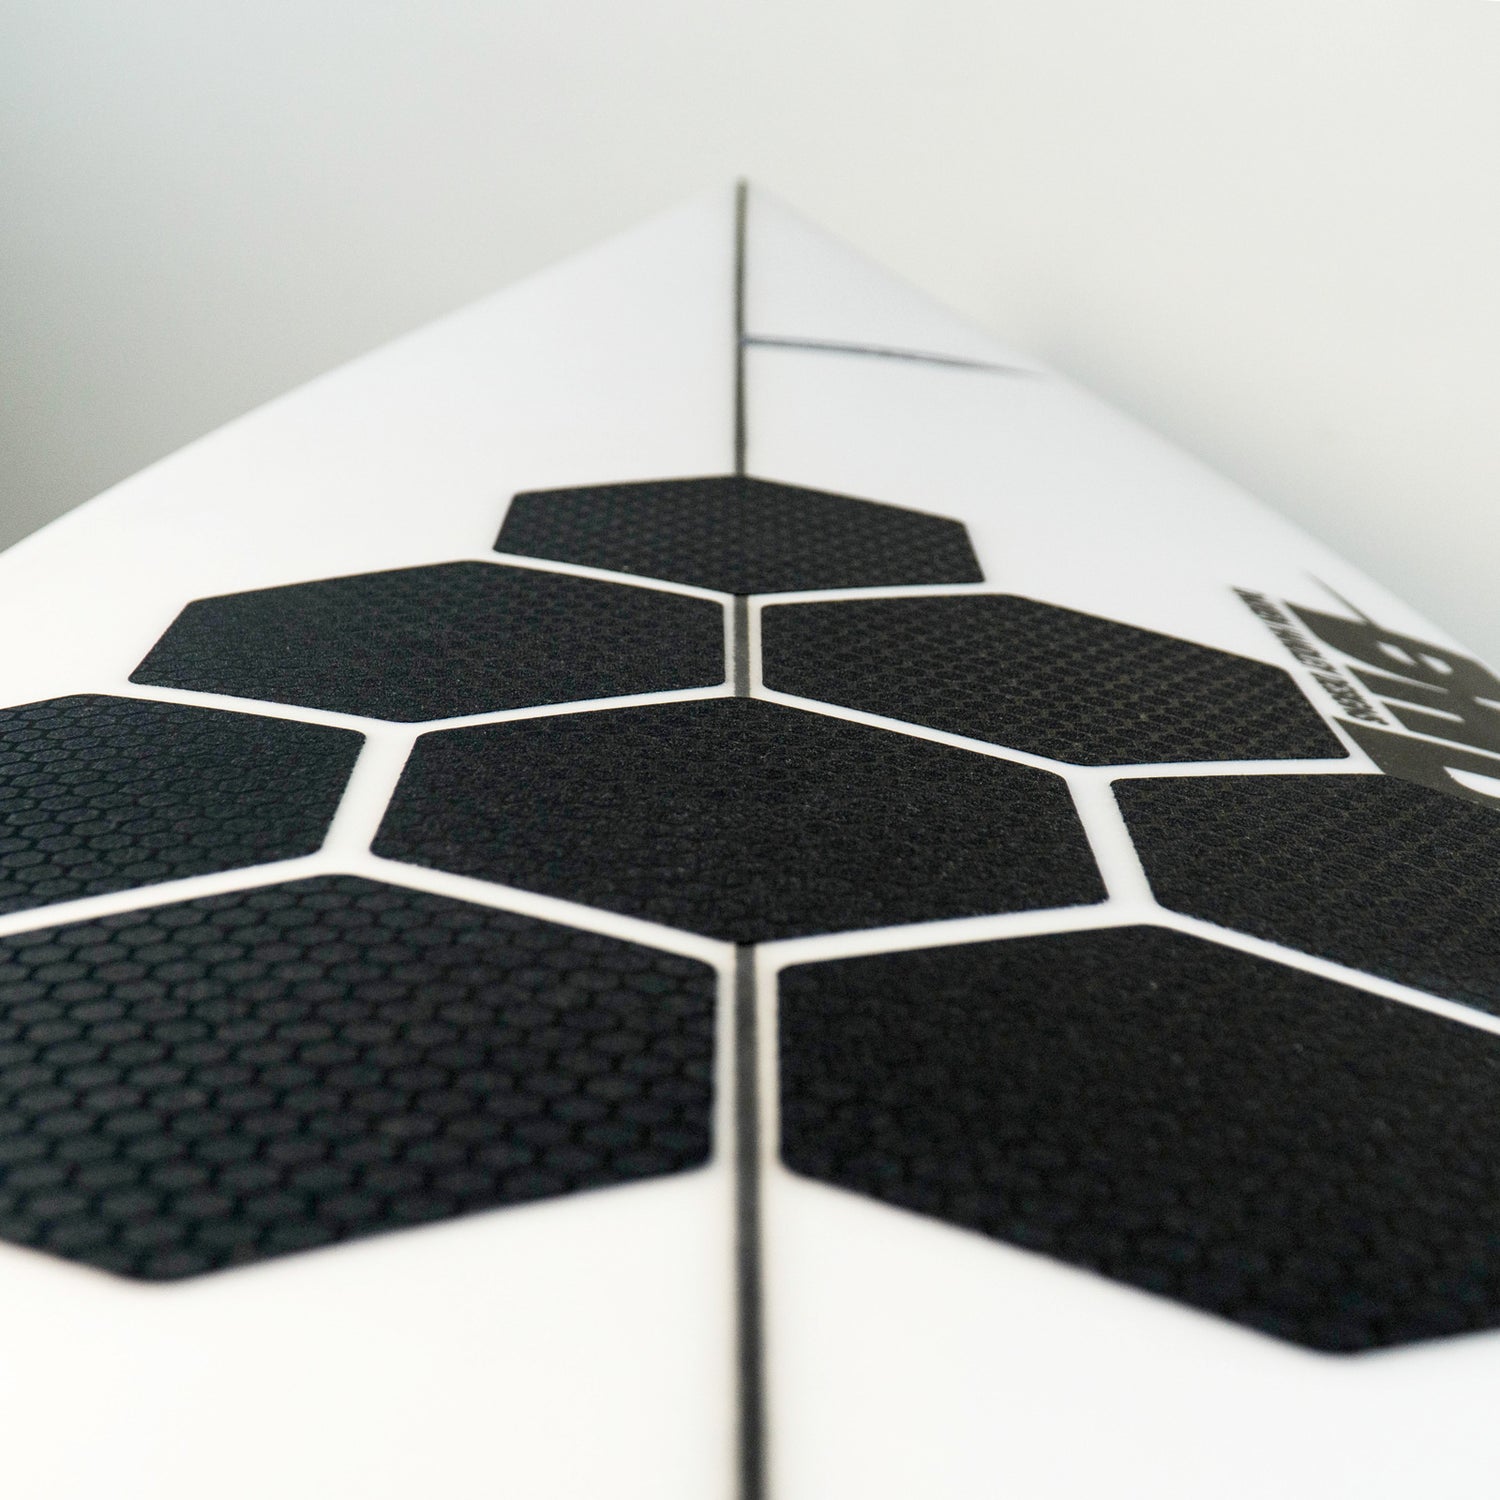 Perspektivische Detailansicht der RSPro Hexa Traction in Schwarz auf einem Surfboard.